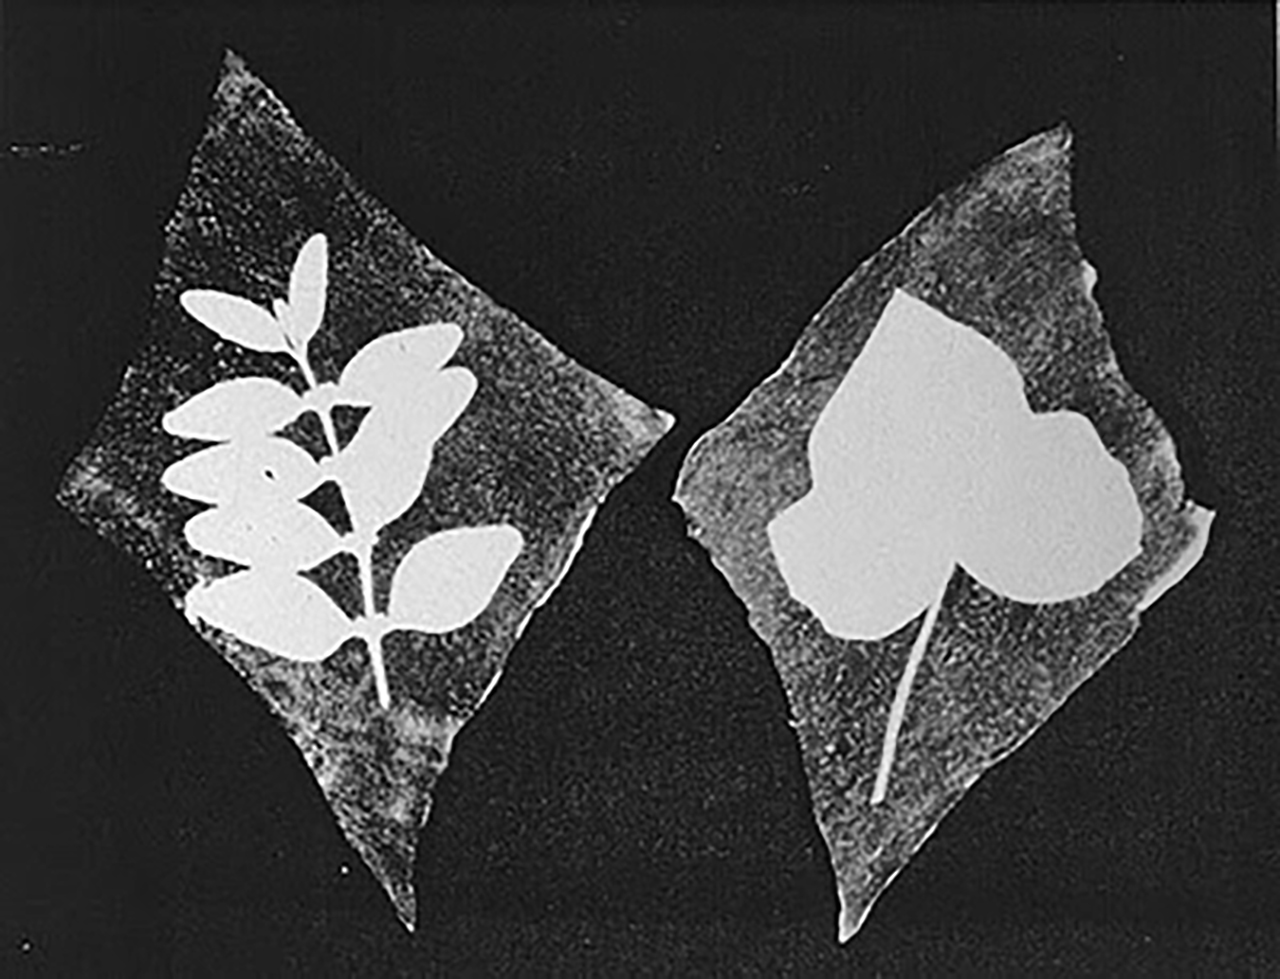 Exemple de photogramme créé par Thomas Wedgwood à partir de végétaux.